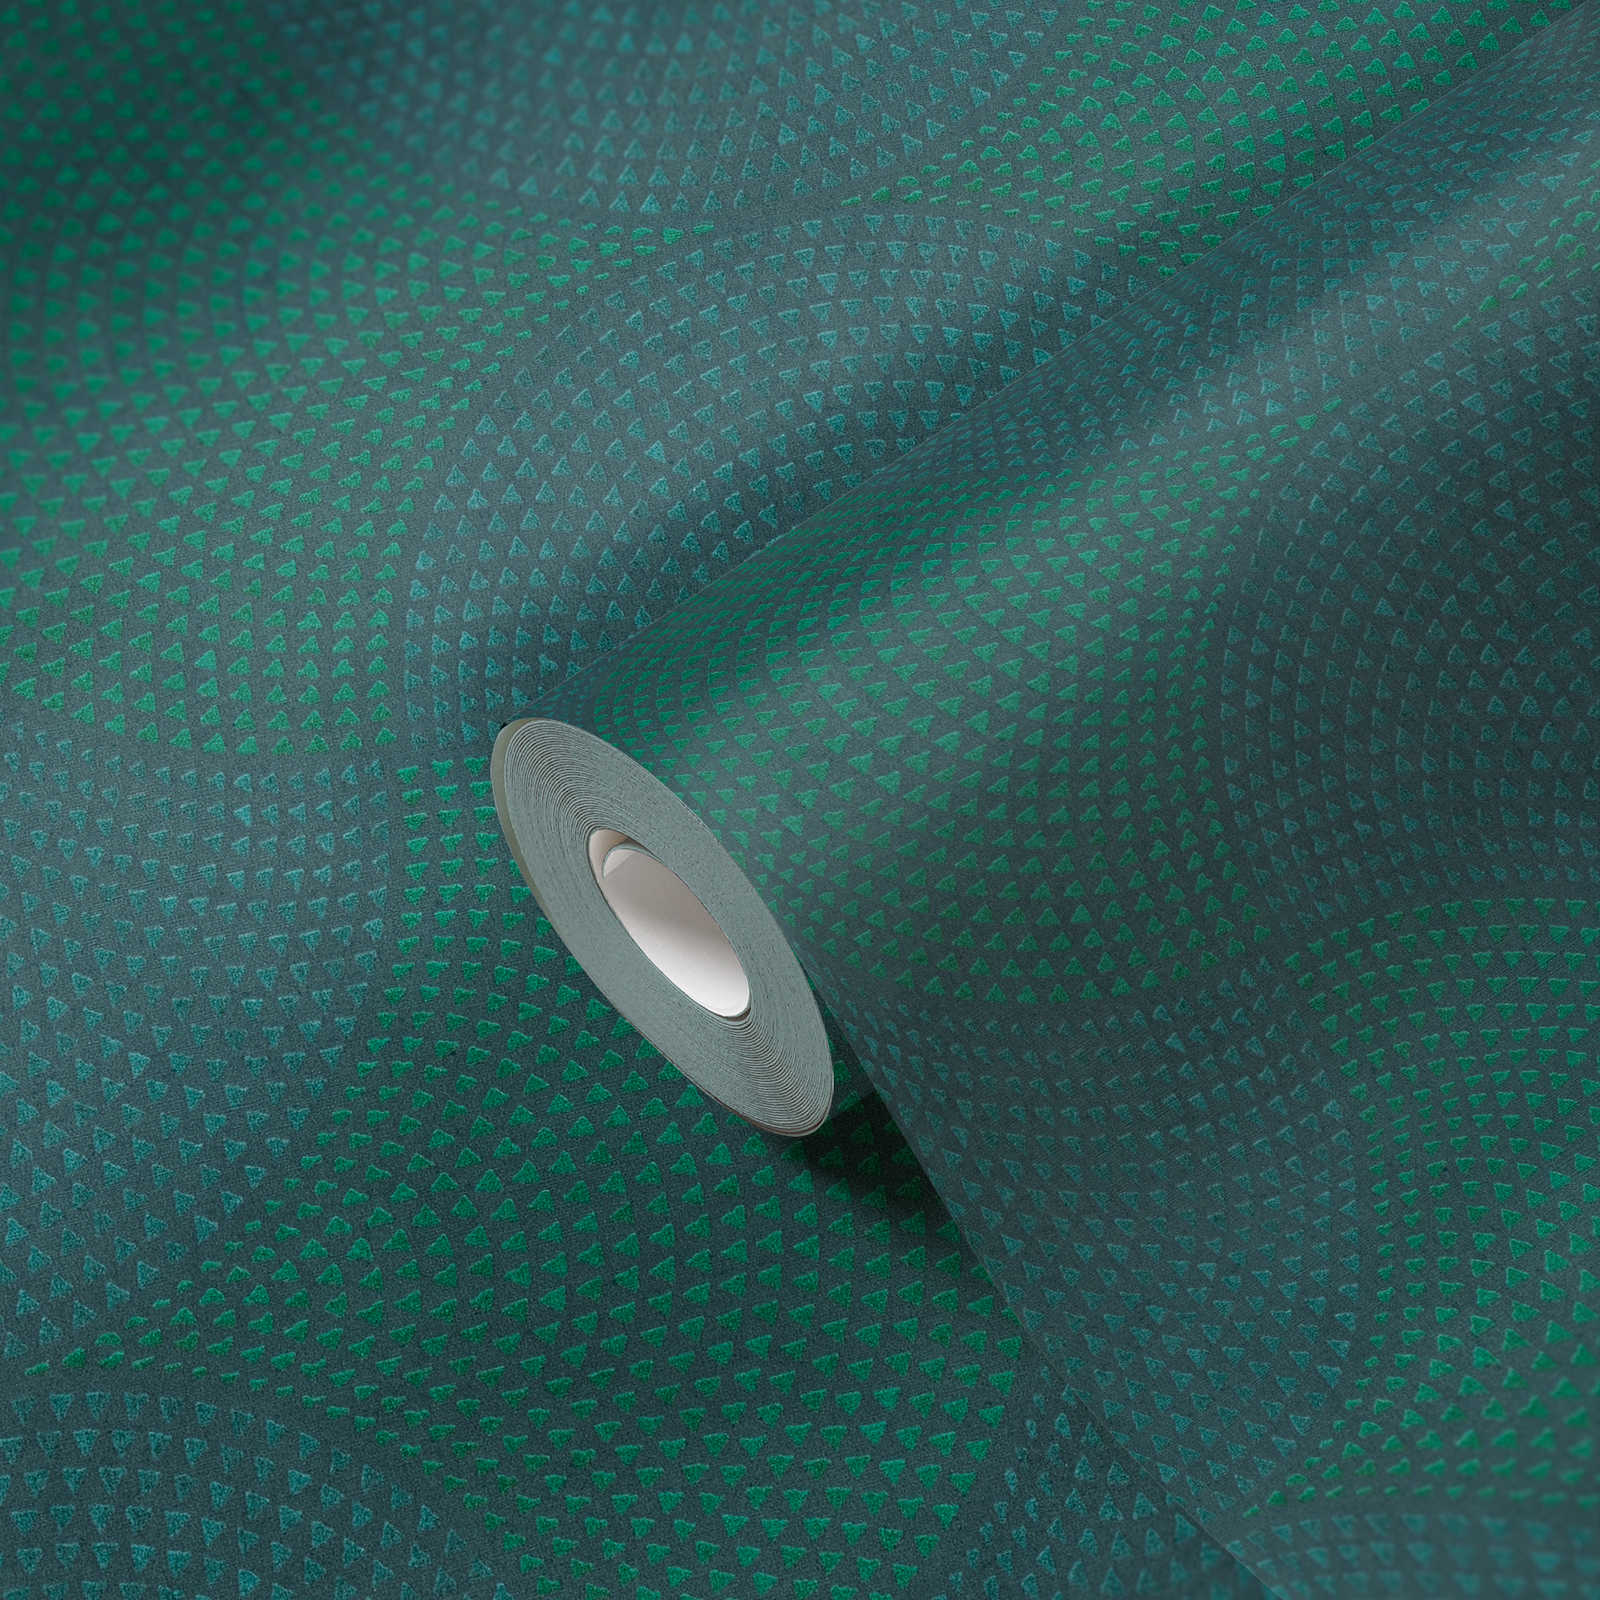             Papel pintado no tejido de diseño metálico con patrón de mosaico - azul, verde, metálico
        